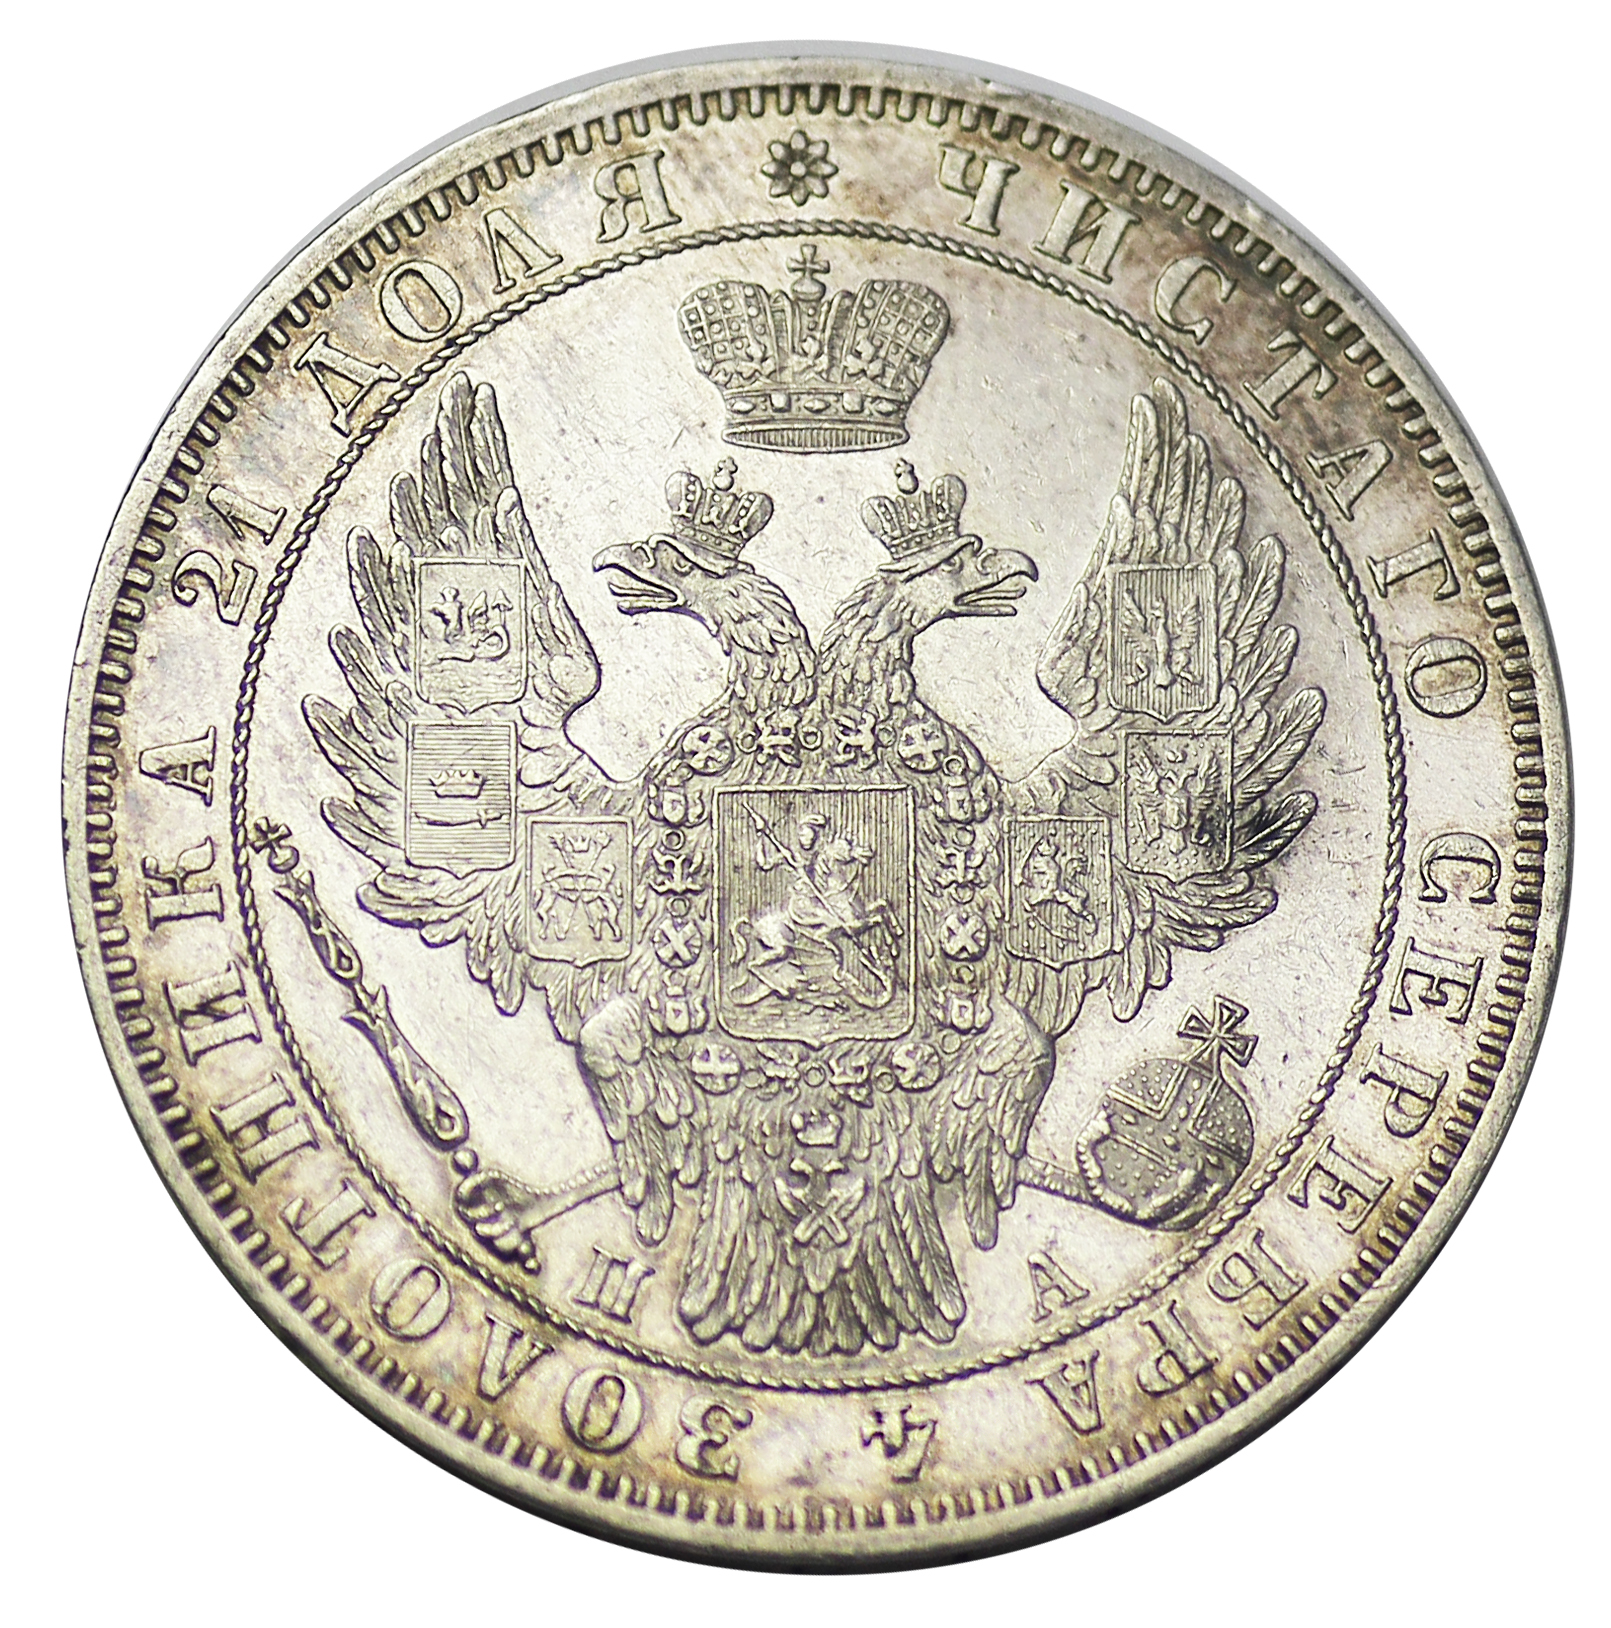 75 российских рублей. Русский рубль 18 века.